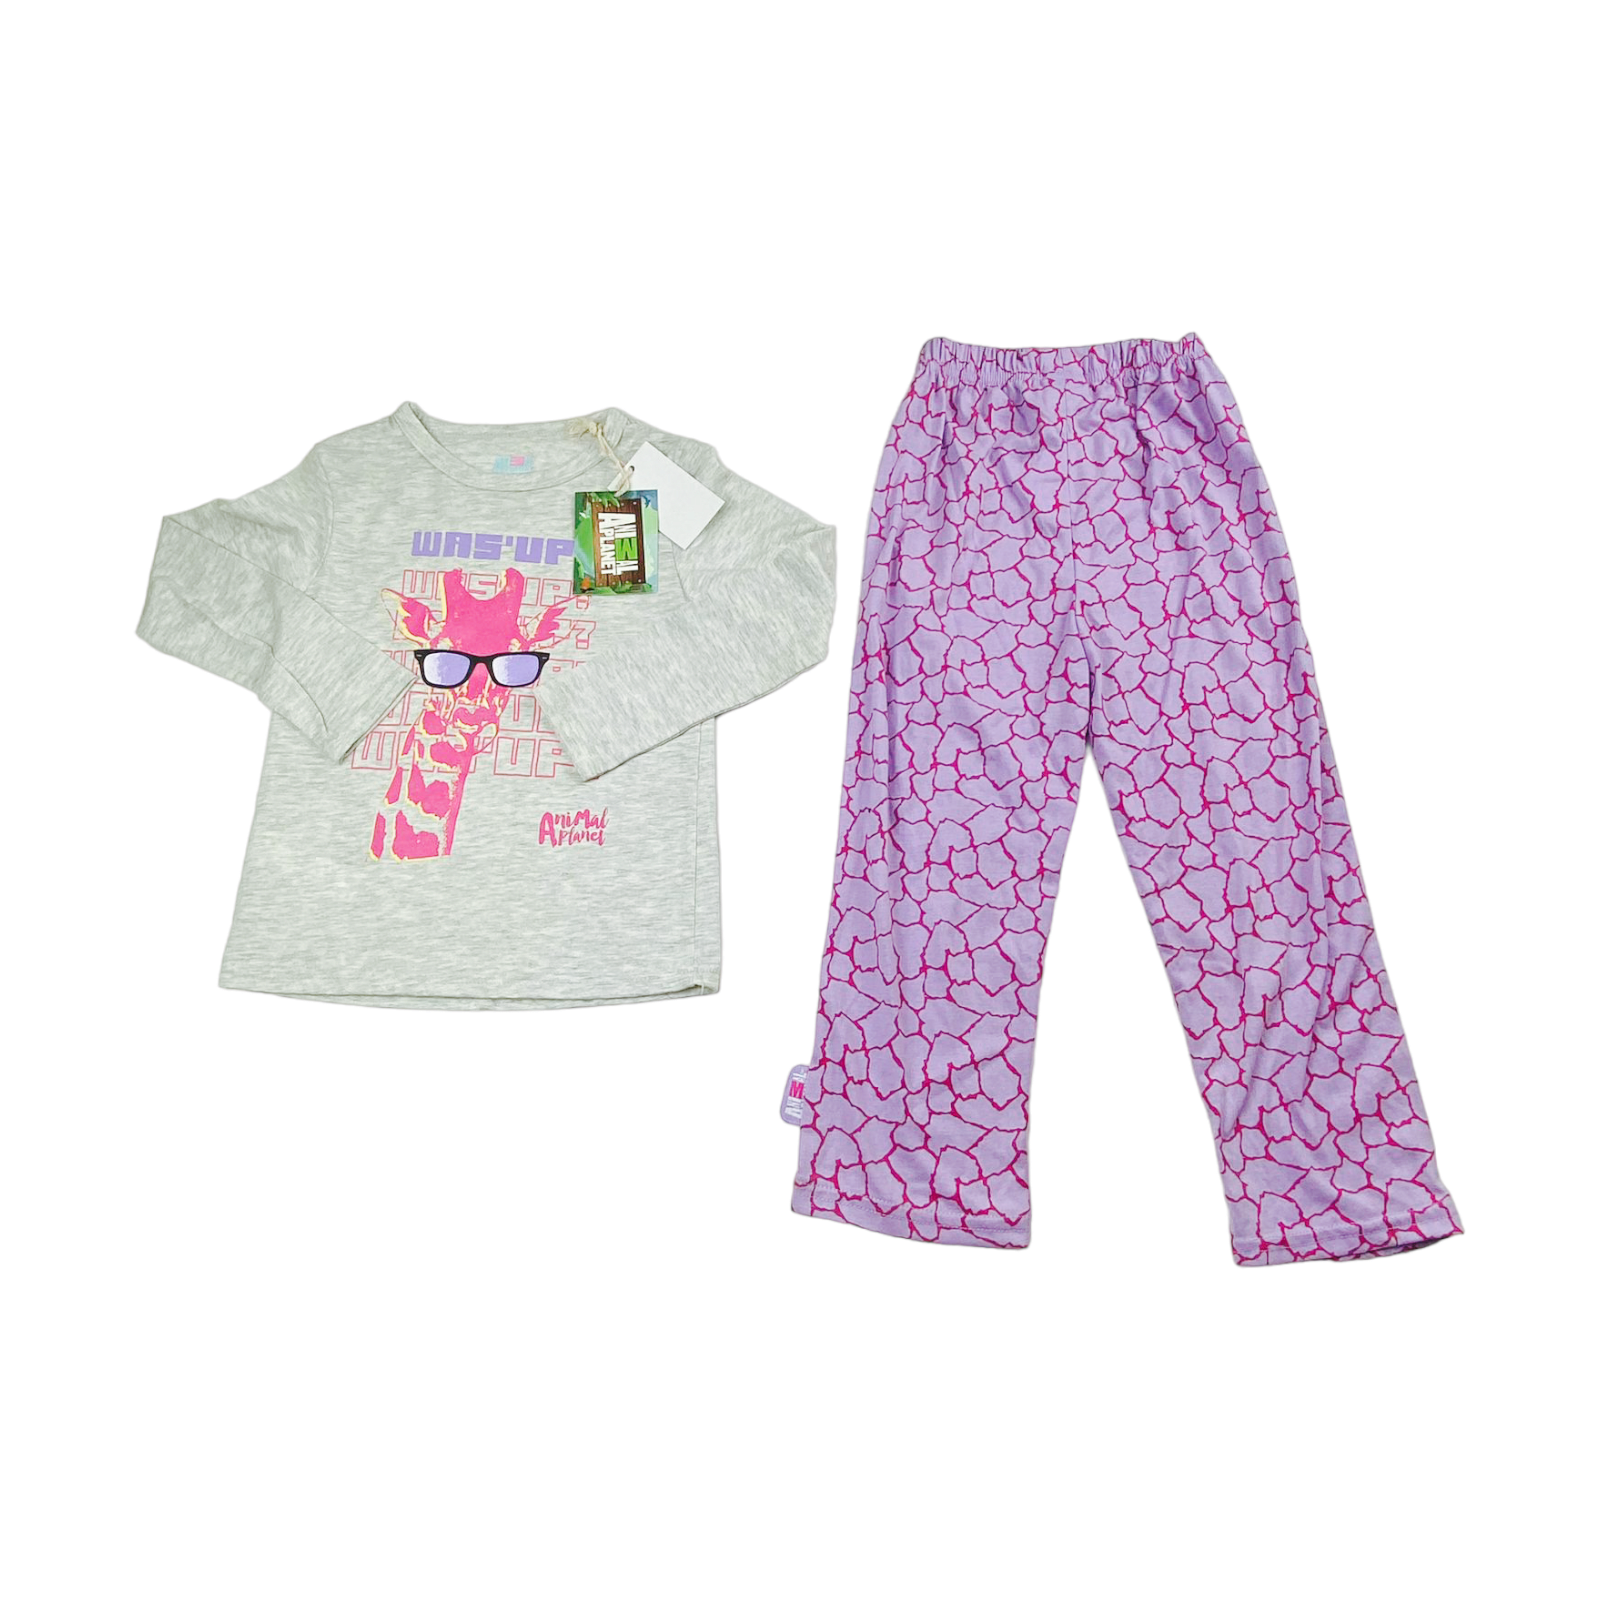 Pijama Polera gris y calza lila Nueva con etiqueta